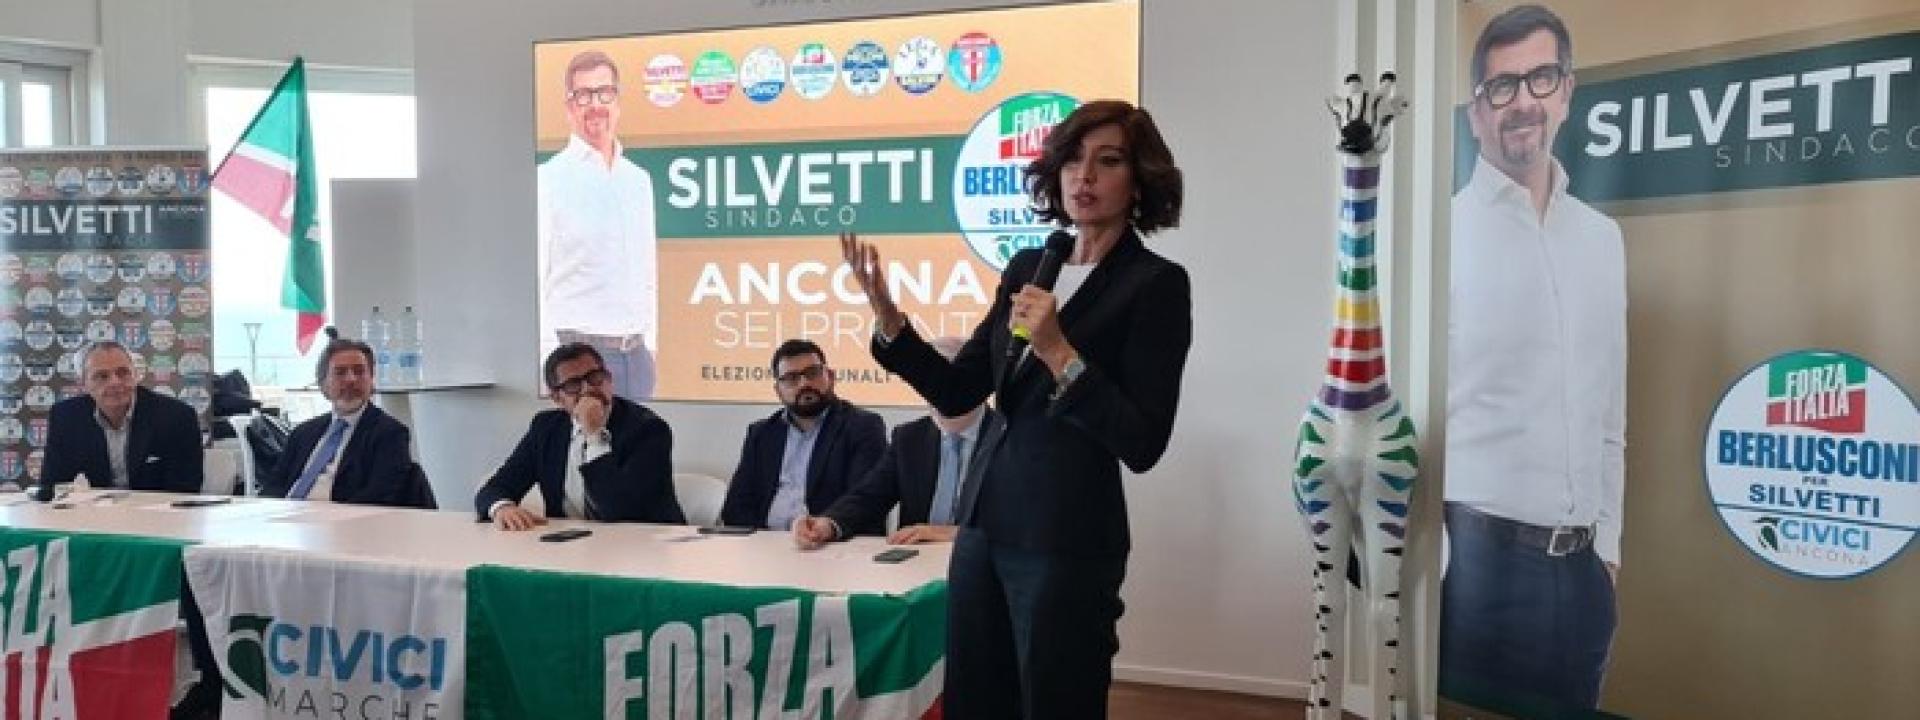 Marche - La ministra Bernini ad Ancona: 